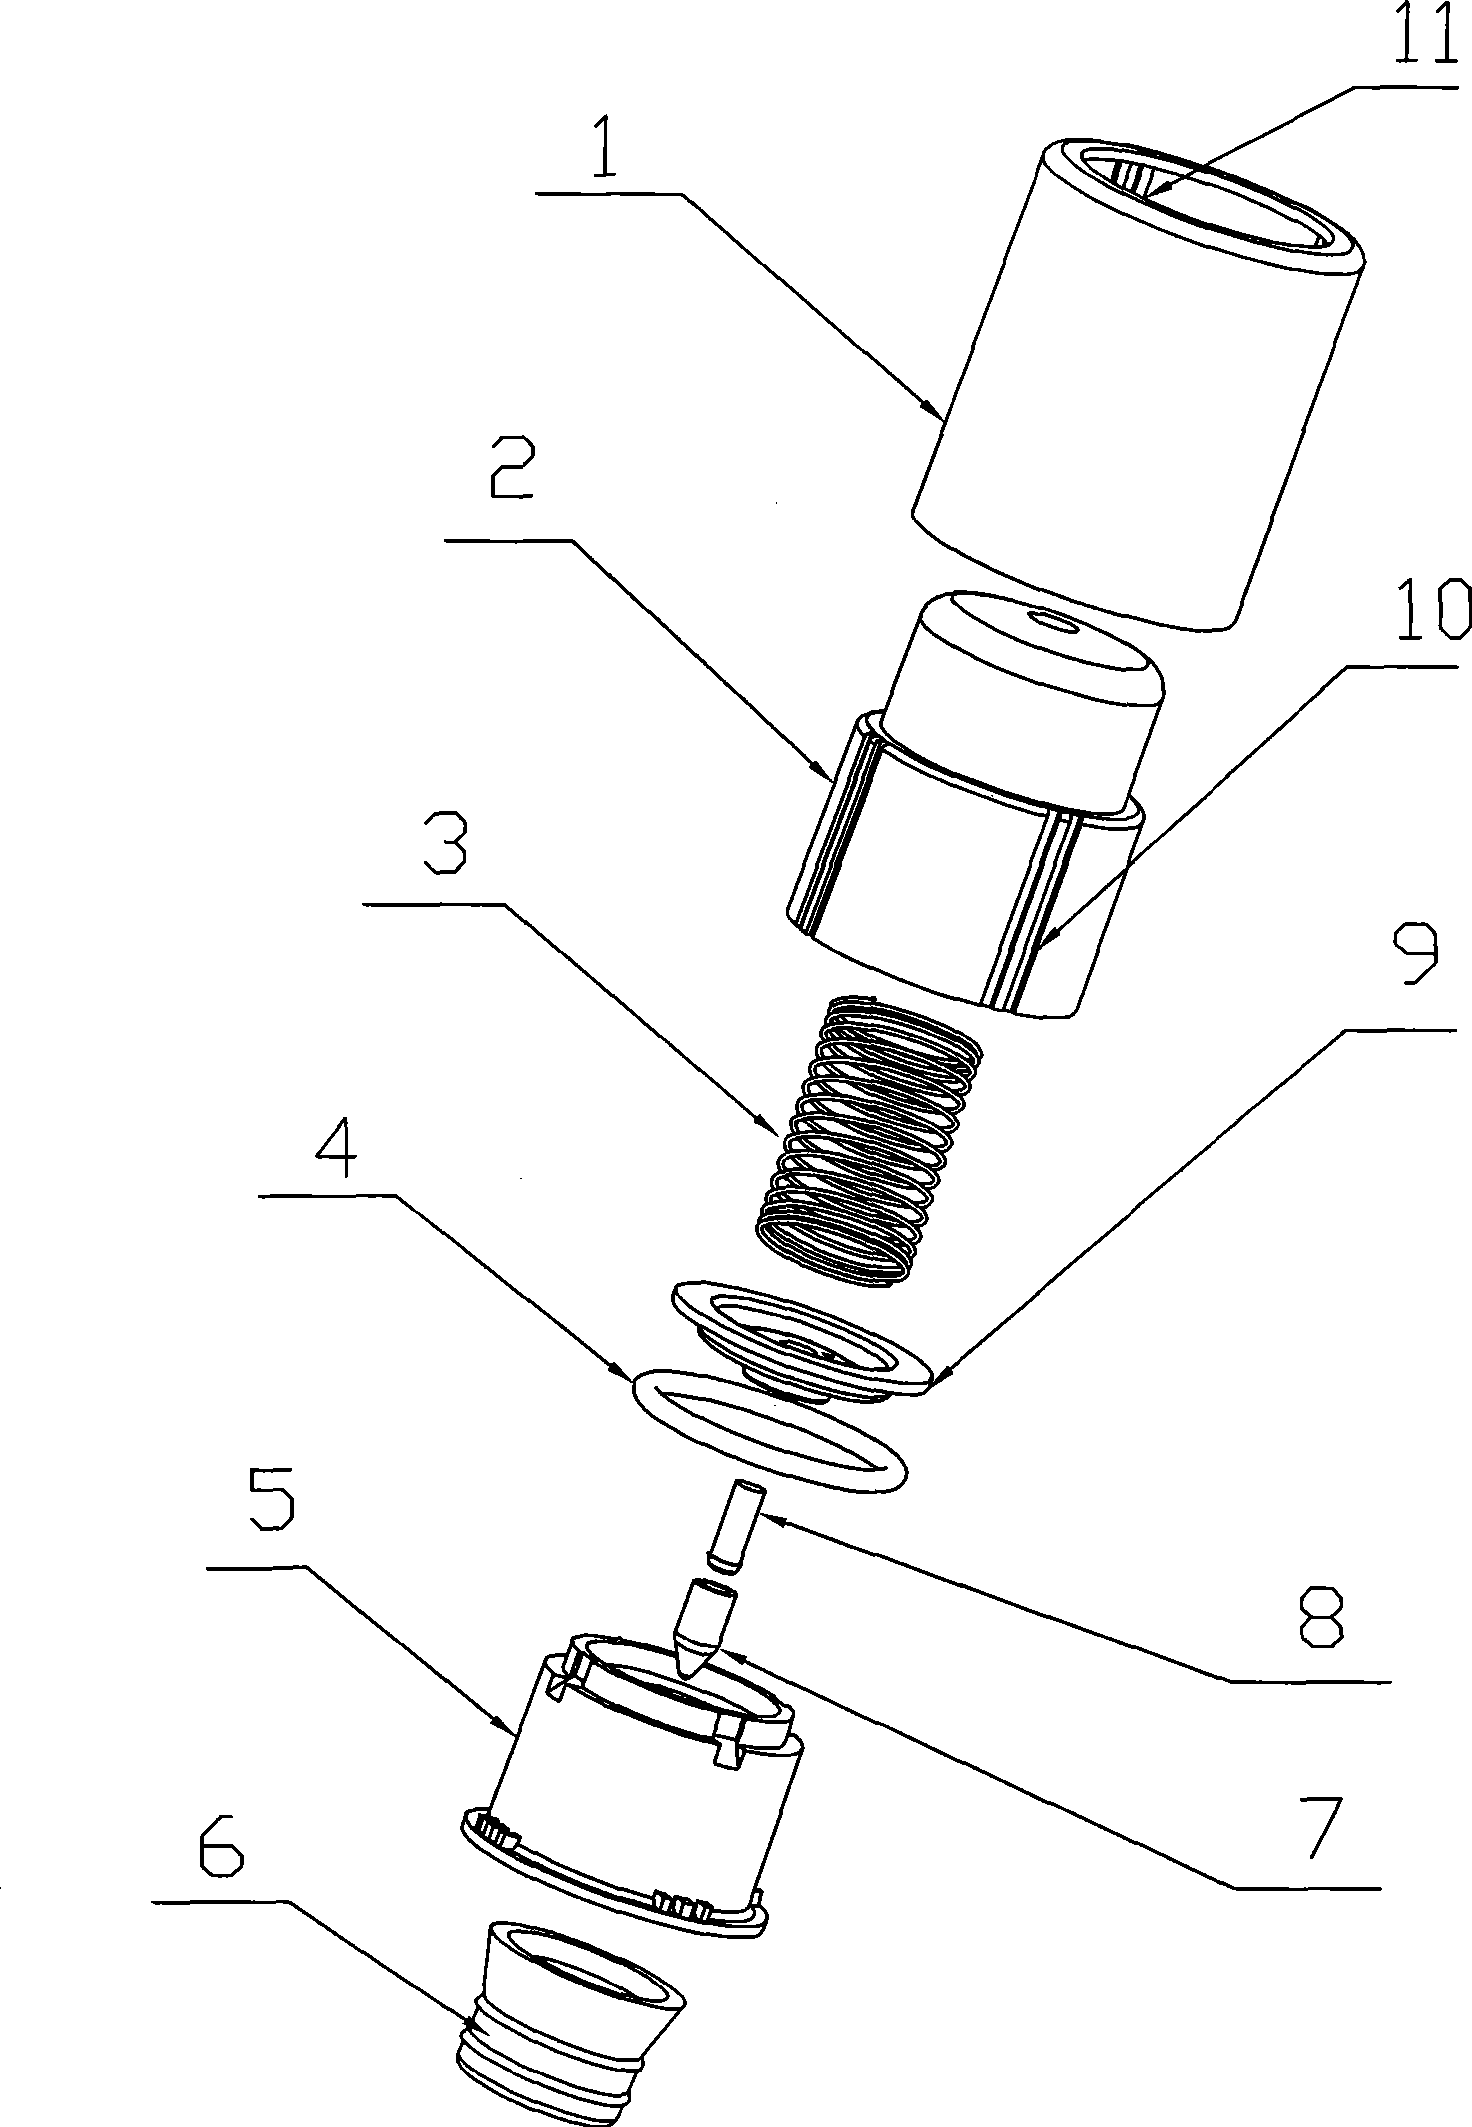 Vacuum bottle stopper